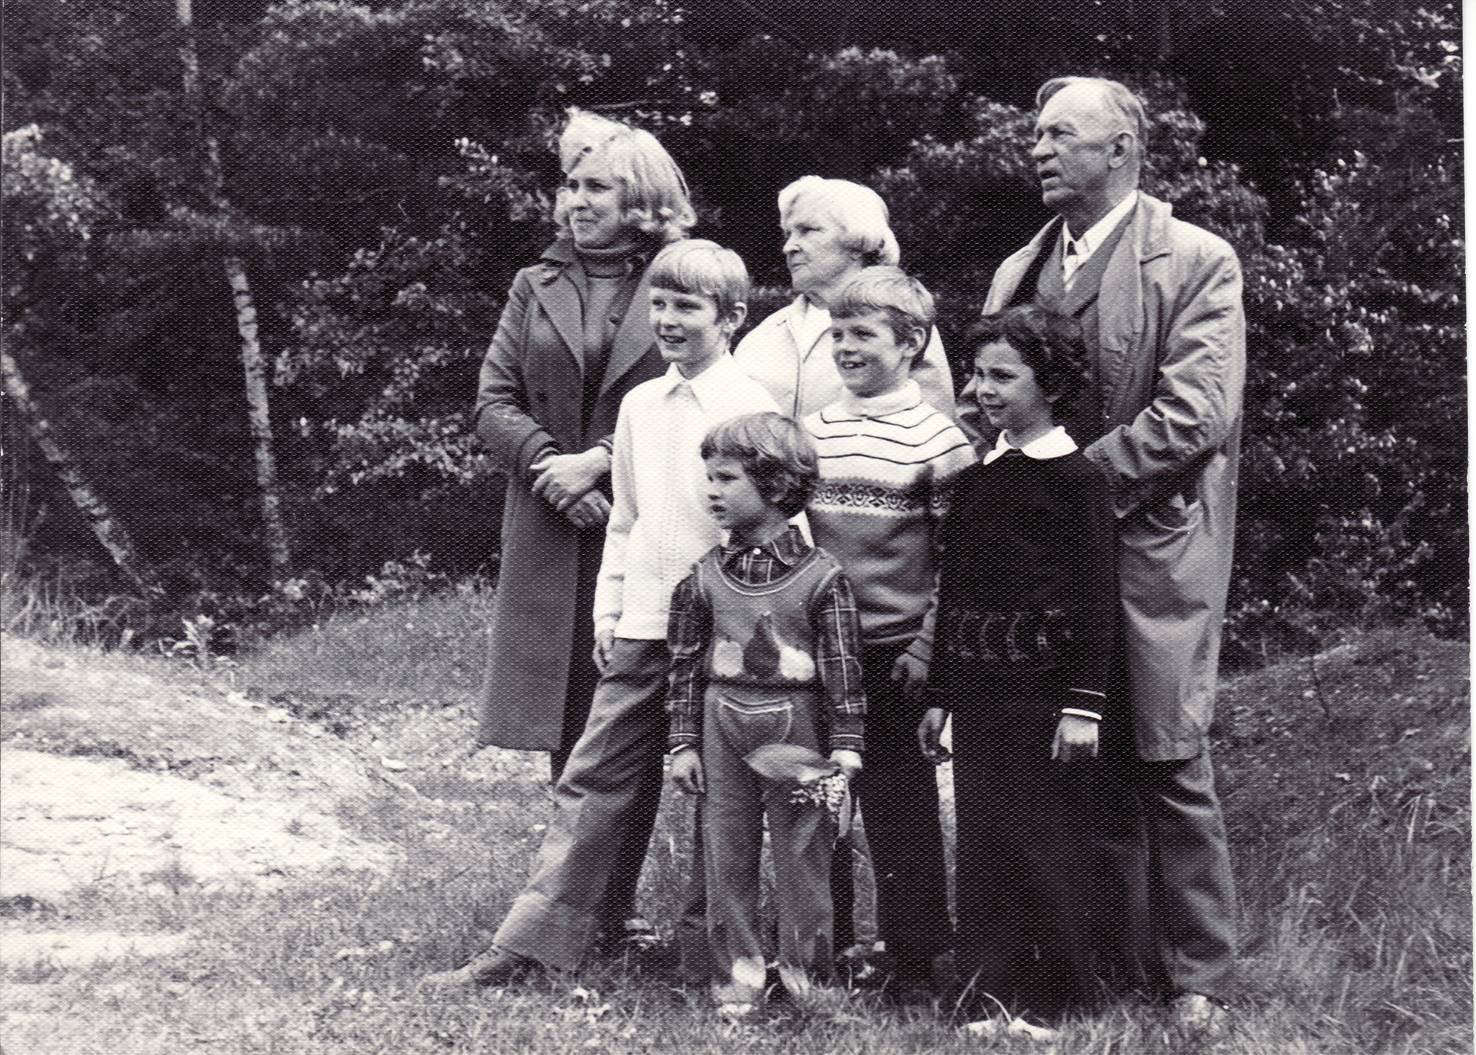  Profesorius, agronomas Petras Vasinauskas su žmona Ona Vasinauskiene, dukterimi Danute Čeponiene (Vasinauskaite) (pirma iš kairės) ir anūkais. 1977 m. pavasarį